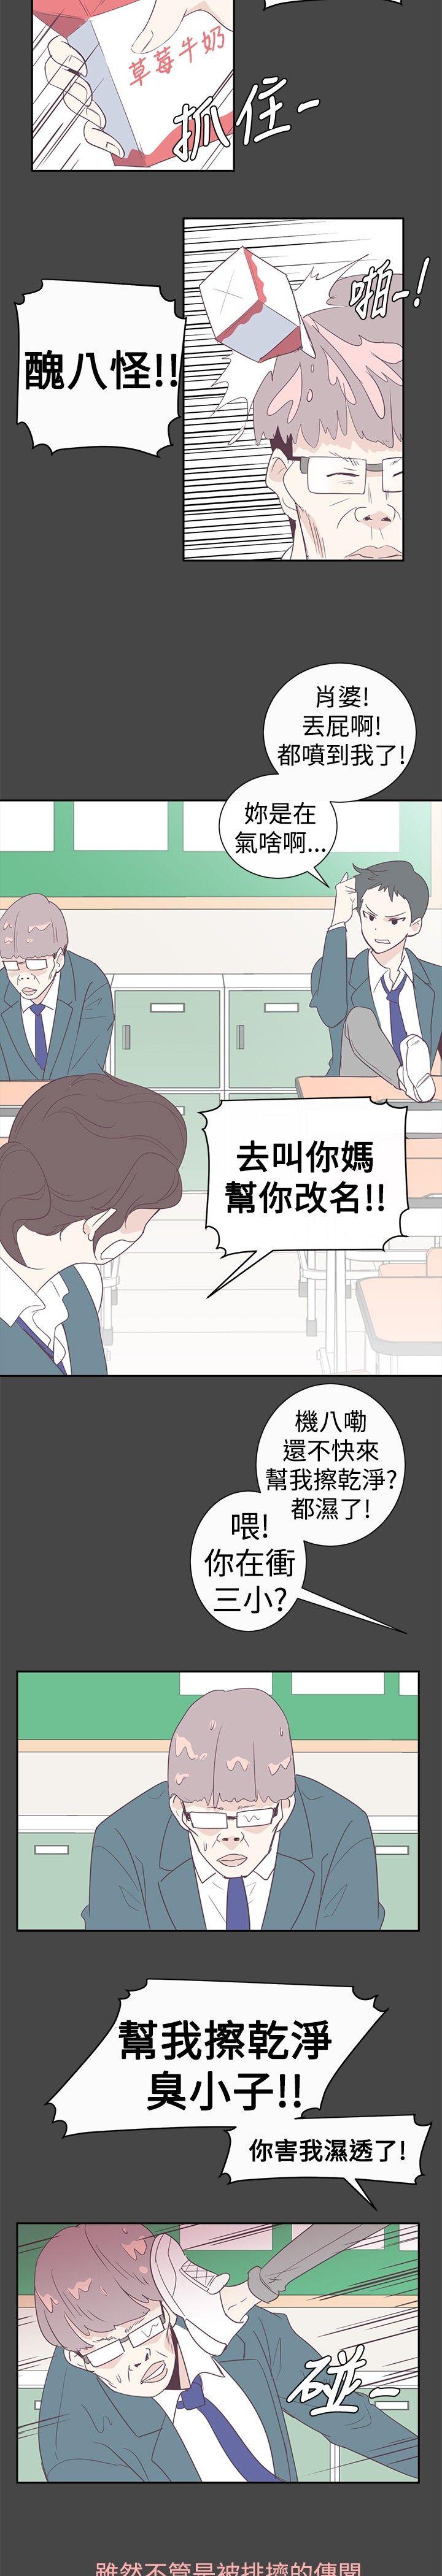 韩国污漫画 追殺金城武 第1话 12